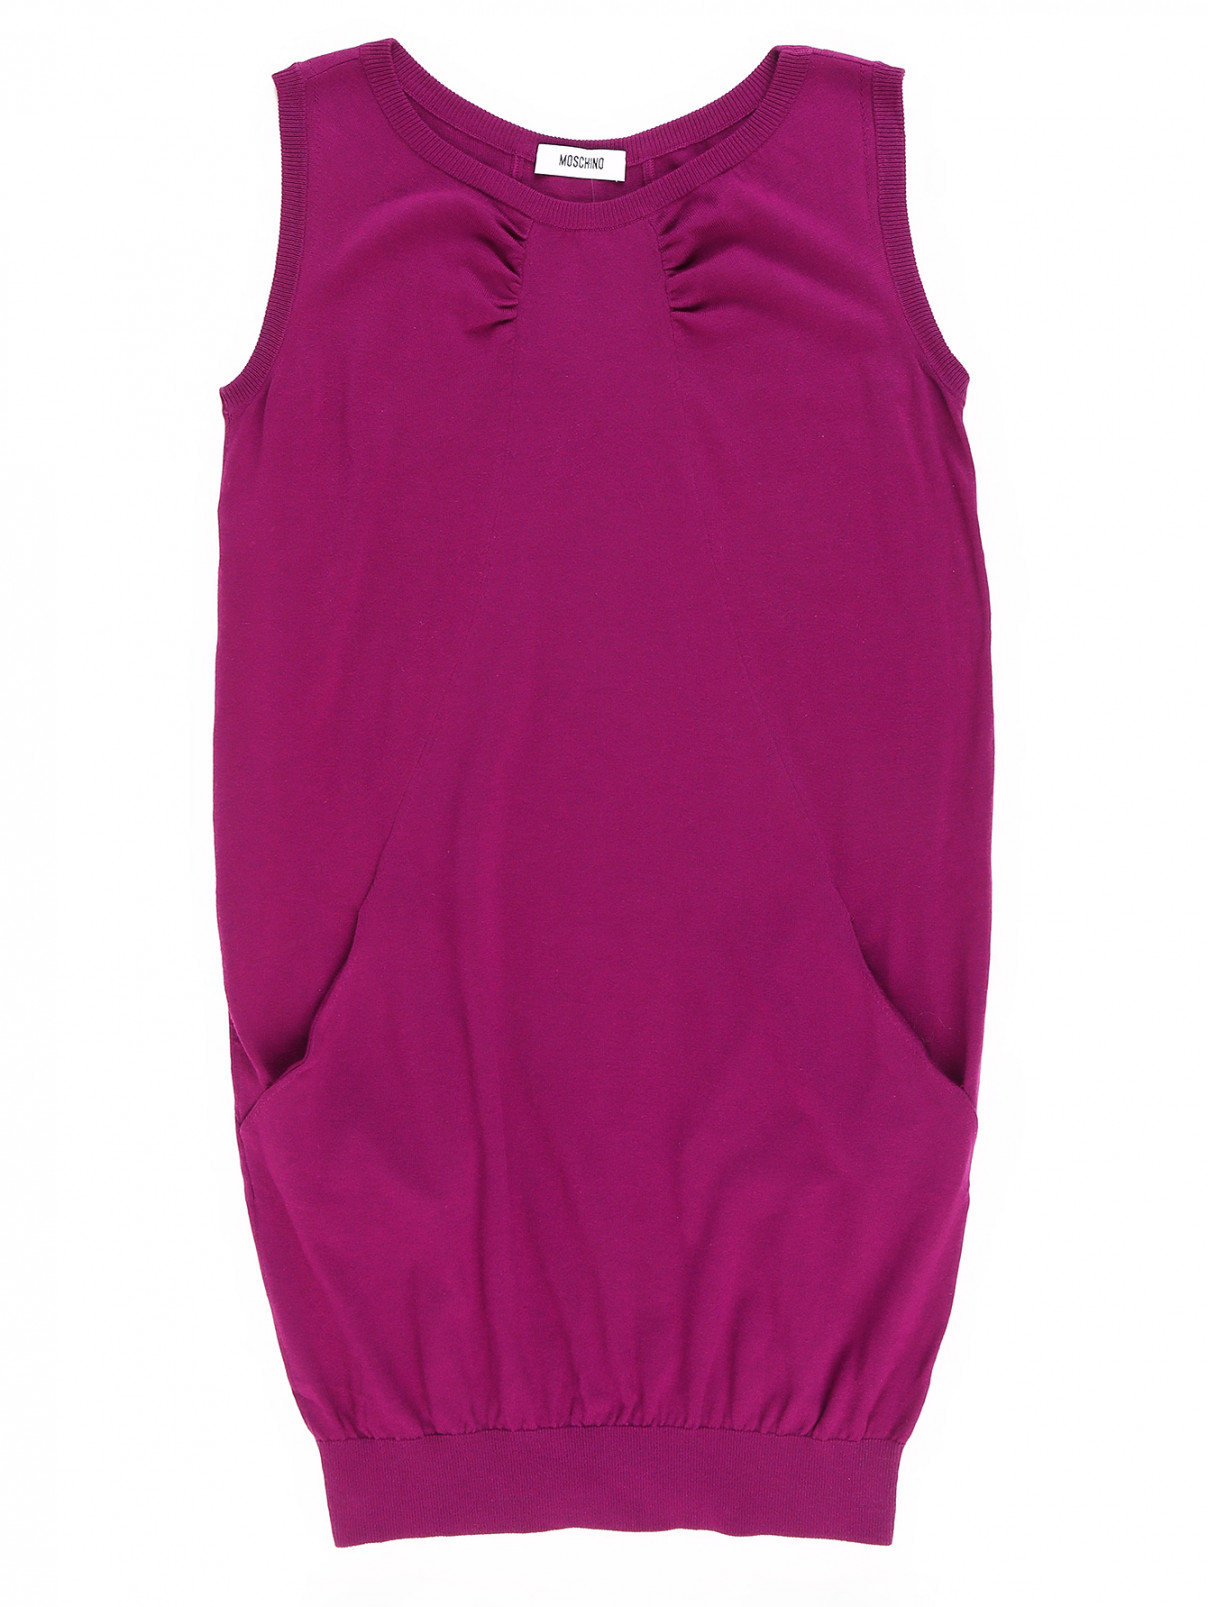 Трикотажное платье из хлопка и шелка Moschino  –  Общий вид  – Цвет:  Фиолетовый